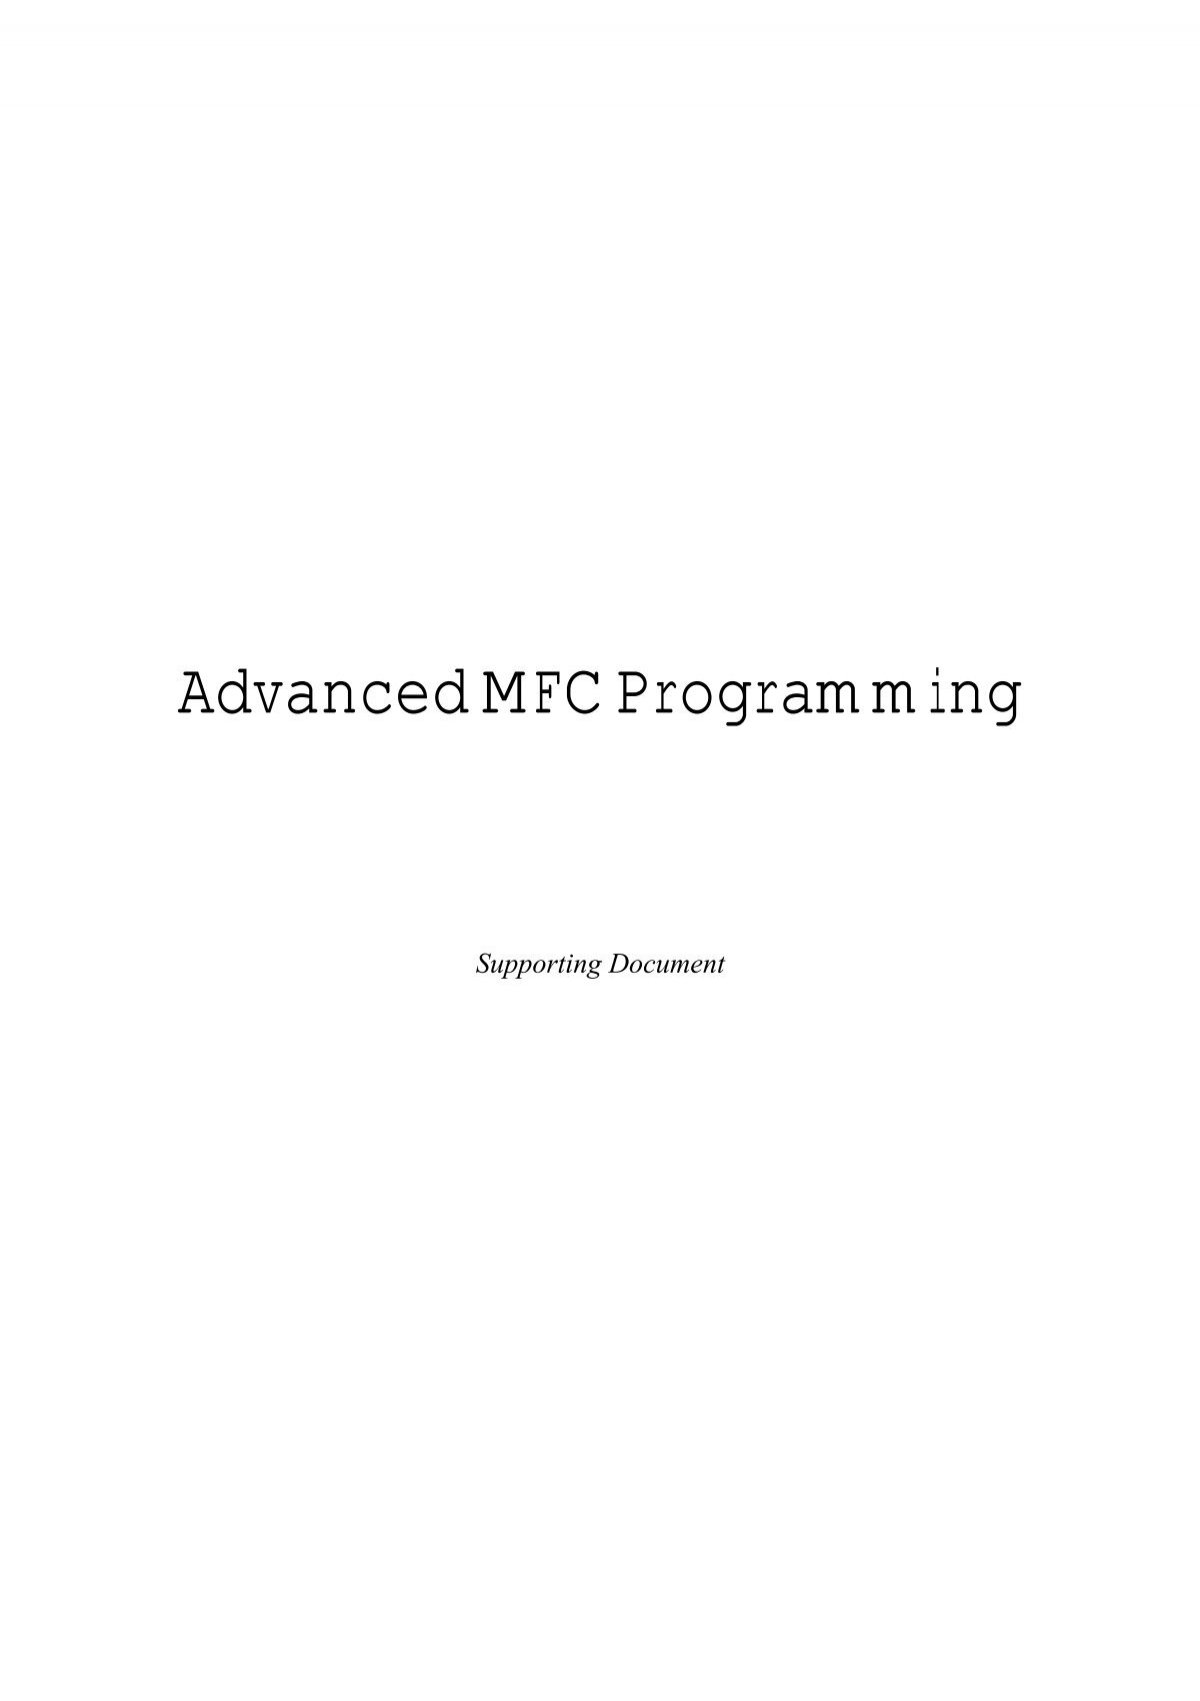 Advanced Mfc Programming